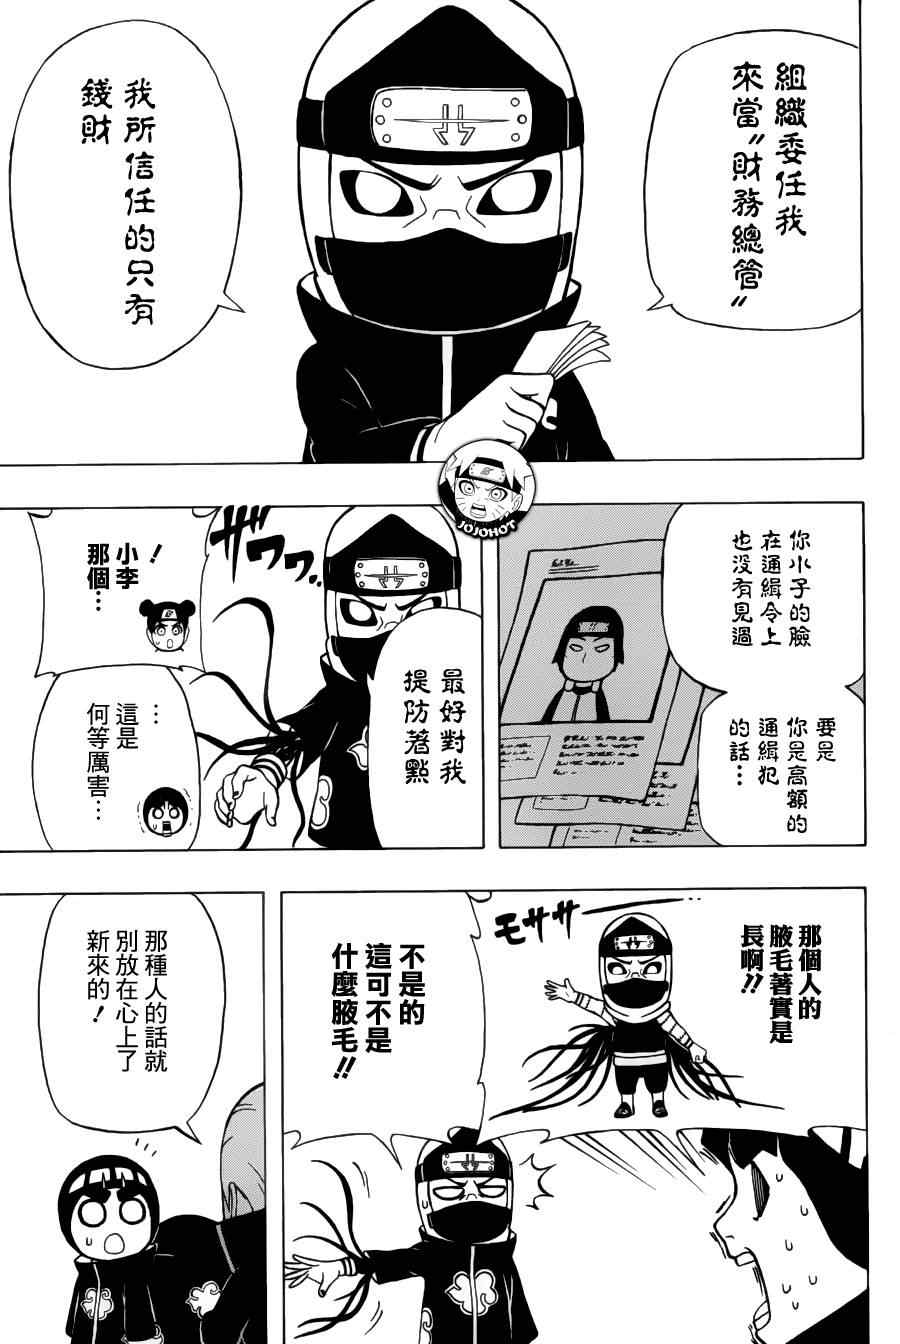 《洛克李之青春活力全开忍传》漫画 洛克李16集